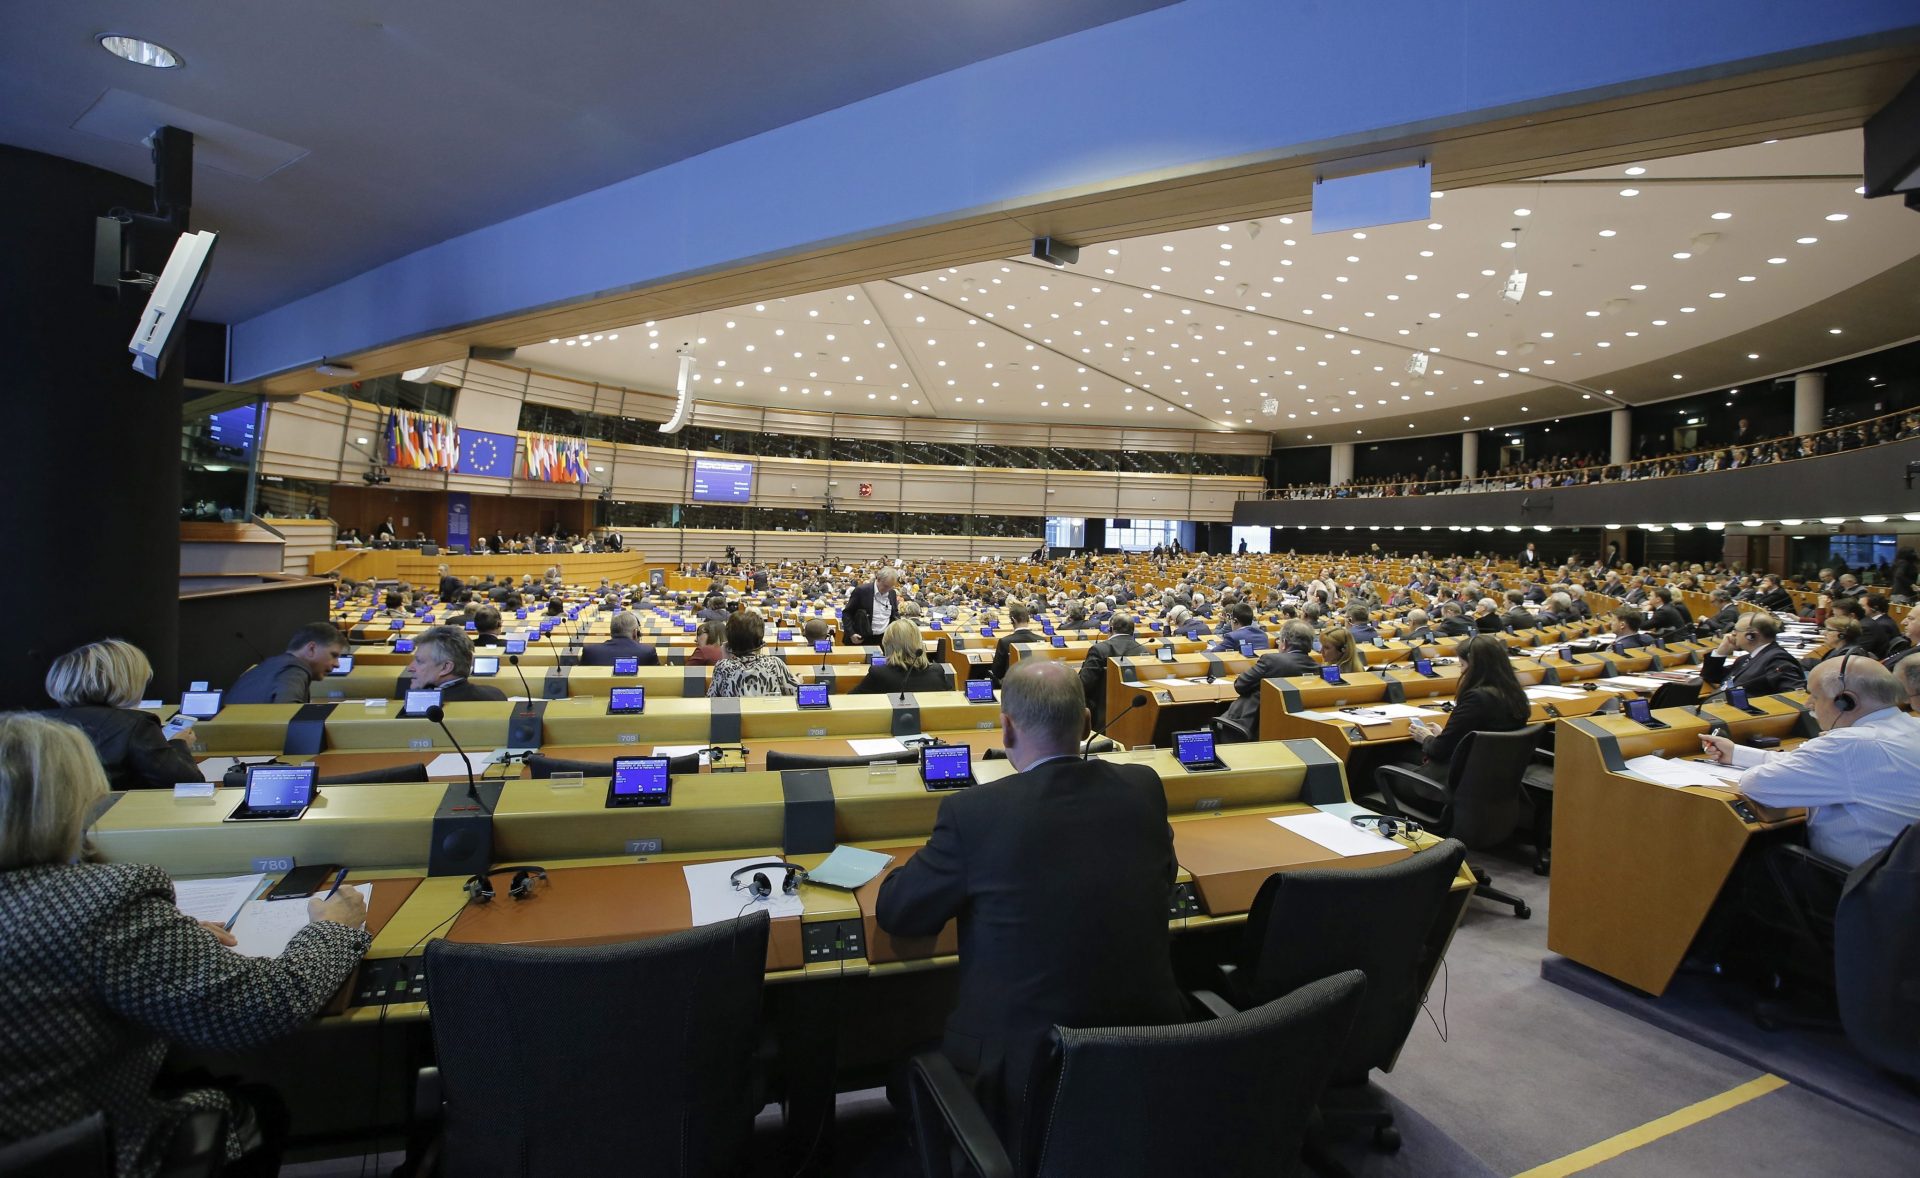 Miembros del Parlamento Europeo asisten a una sesión parlamentaria en Bruselas. Efeagro/EPA/Olivier Hoslet